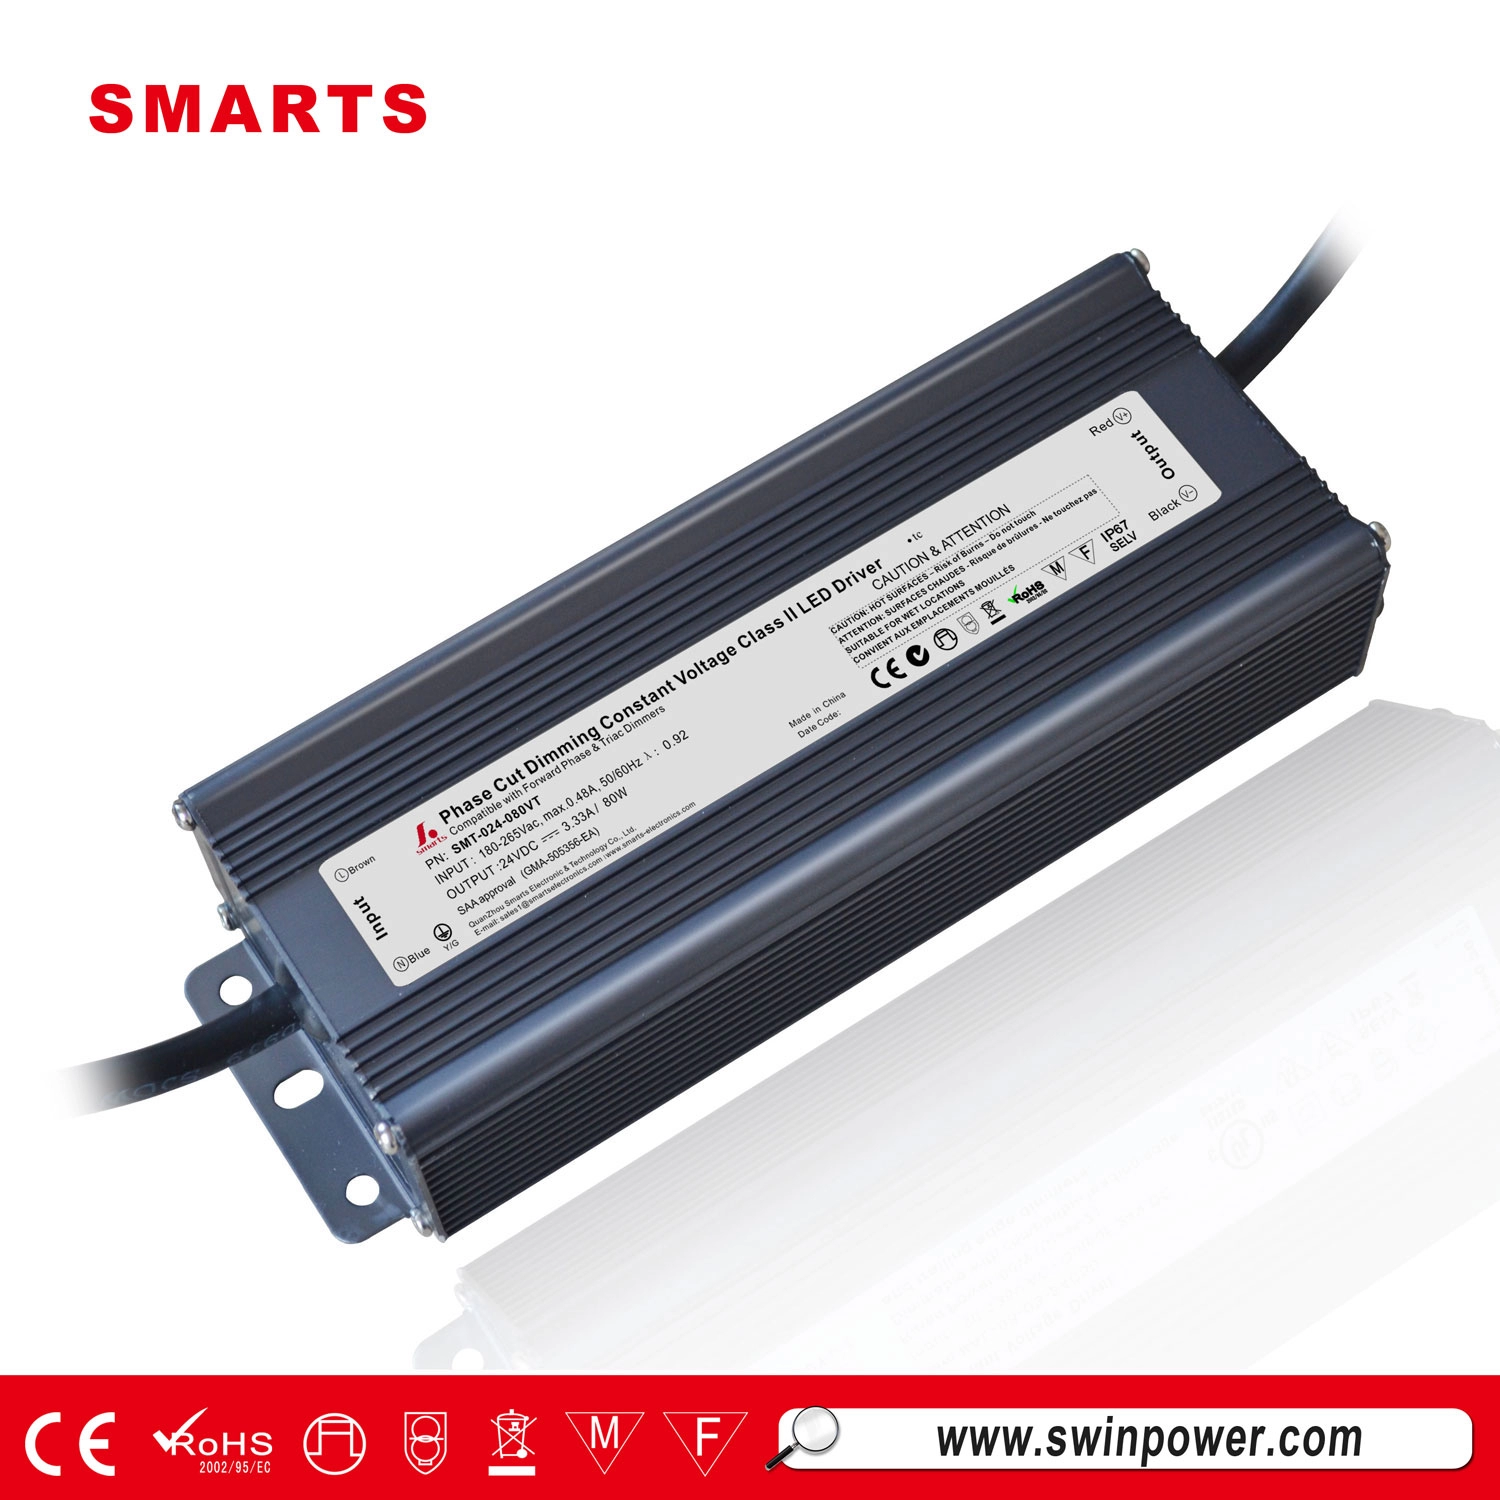 atenuación del controlador LED de voltaje constante 24v 80w con caja de conexiones de fuente de alimentación led